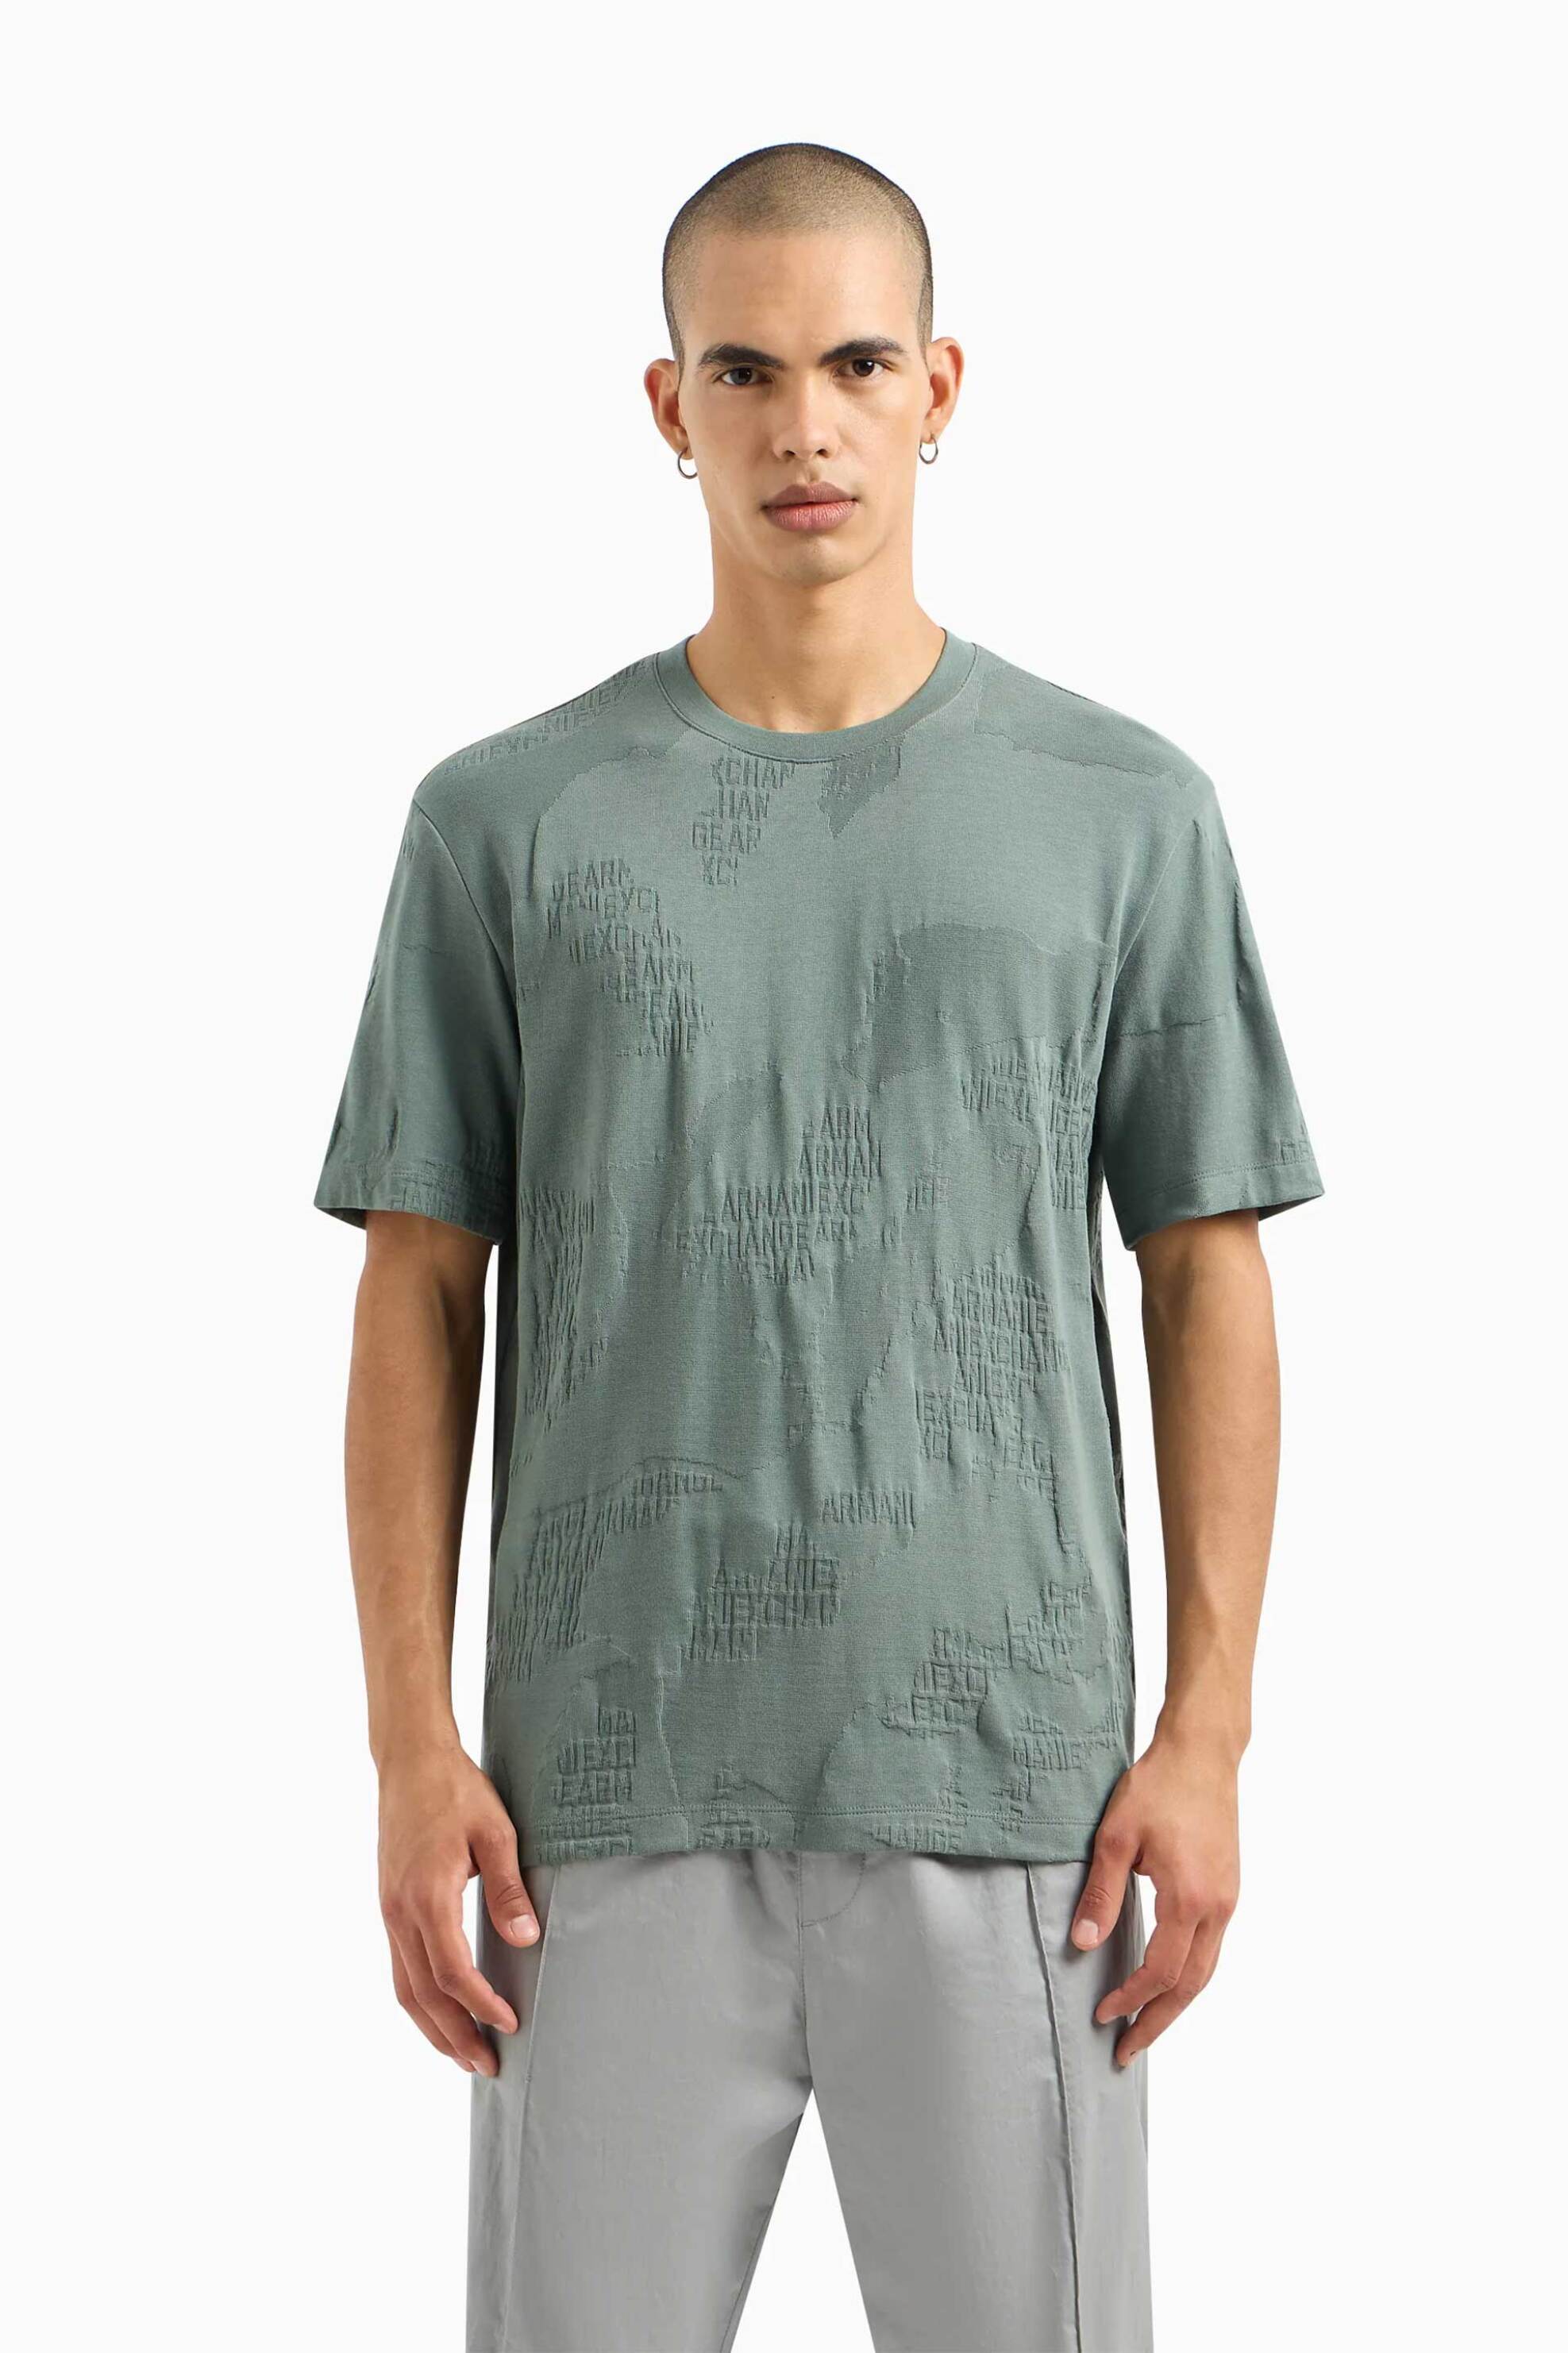 Ανδρική Μόδα > Ανδρικά Ρούχα > Ανδρικές Μπλούζες > Ανδρικά T-Shirts Armani Exchange ανδρικό T-shirt με jacquard pattern Regular Fit - 3DZTLHZJ85Z Πράσινο Μέντας